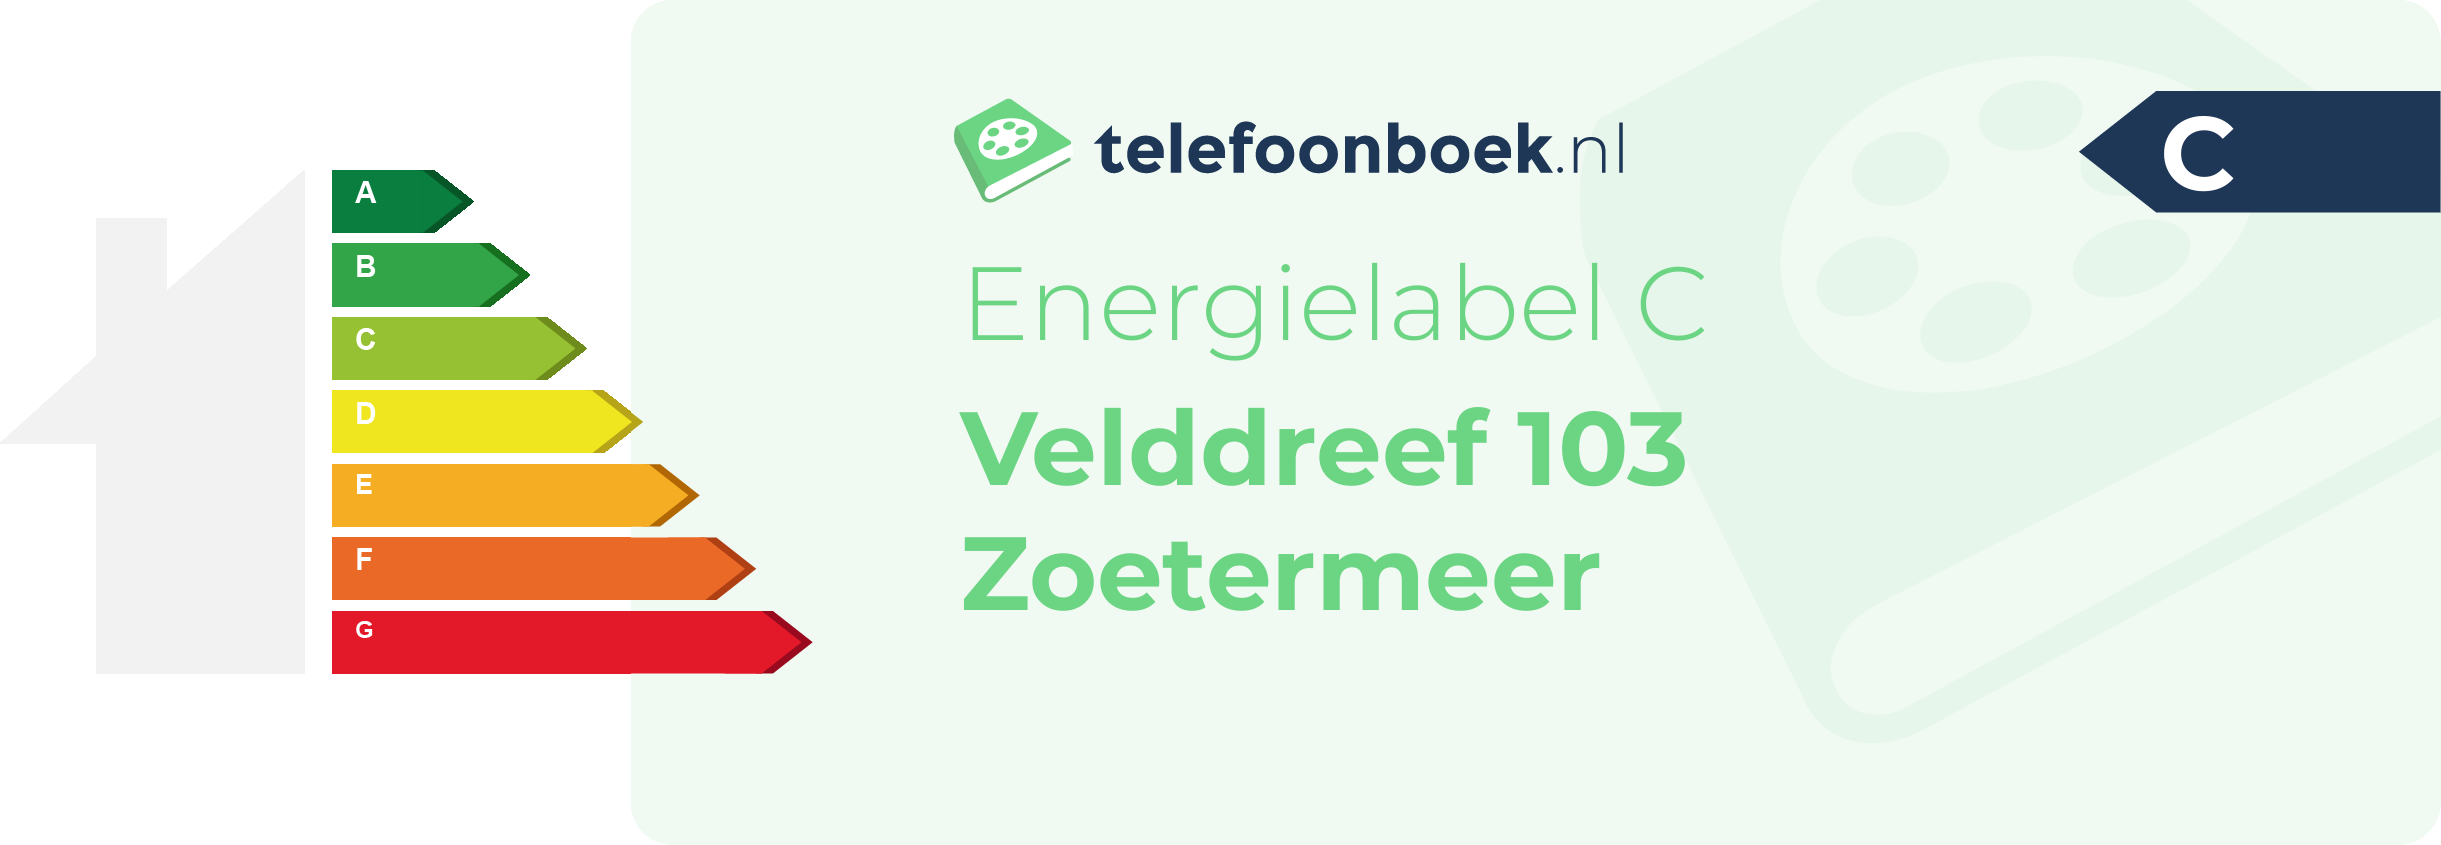 Energielabel Velddreef 103 Zoetermeer